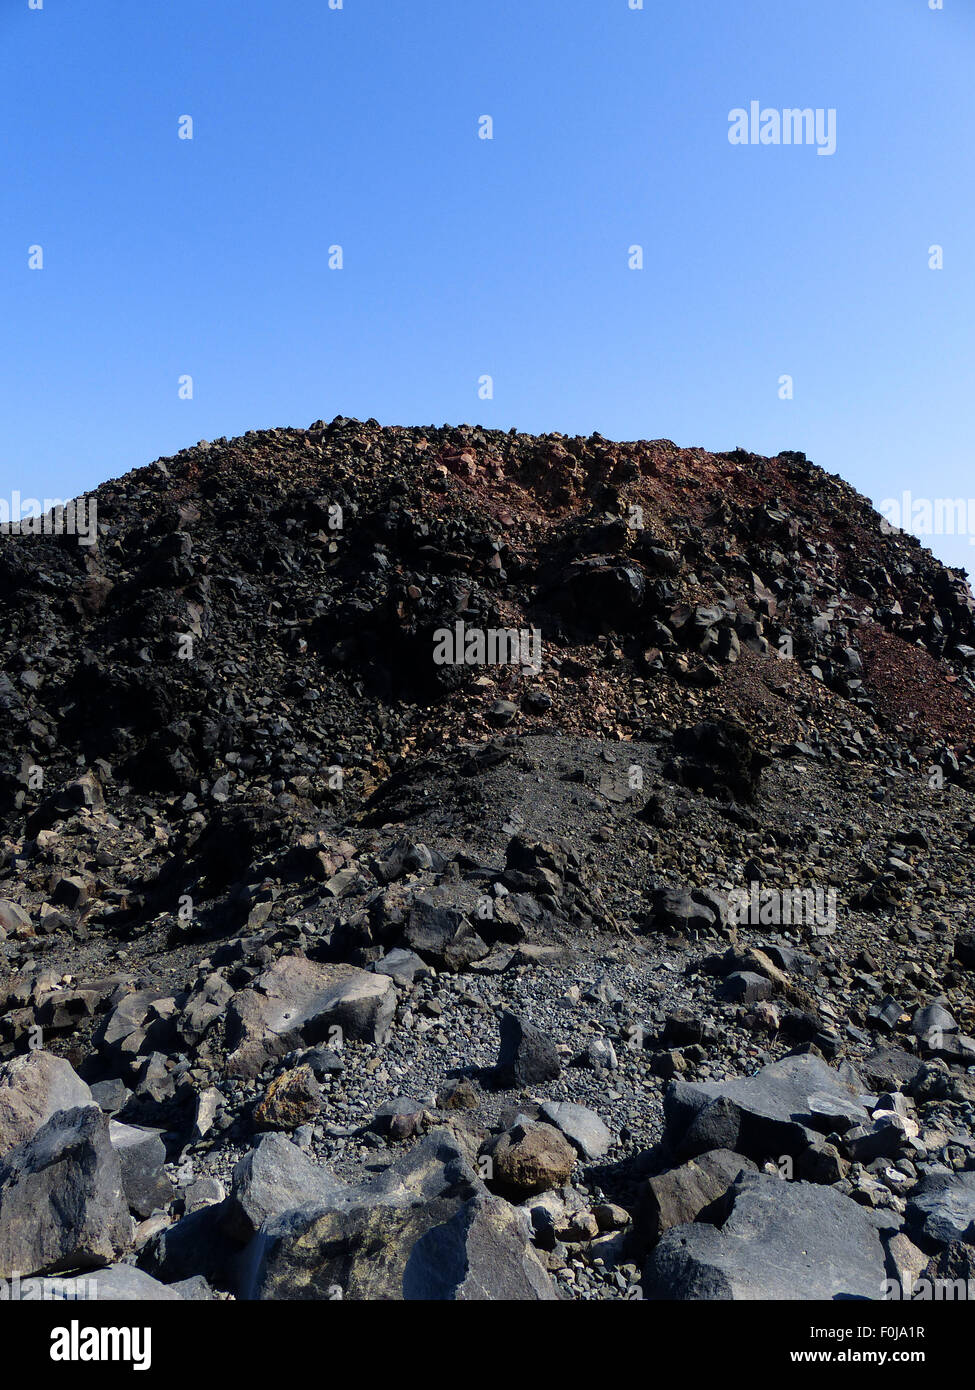 Incredibile paesaggio roccioso di Nea Kameni isola vulcanica Foto Stock